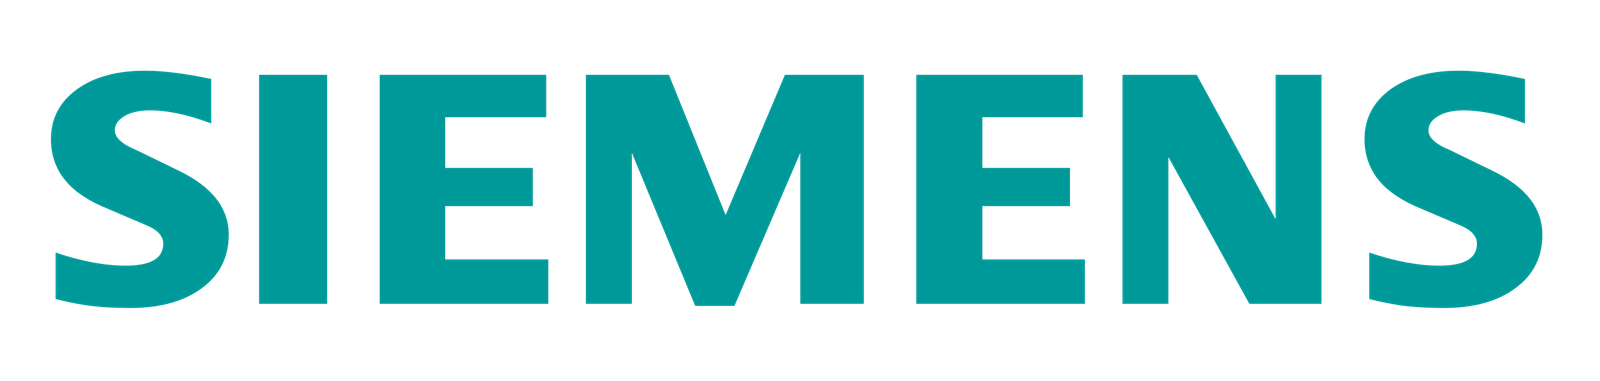 Siemens-logo.svg (1)